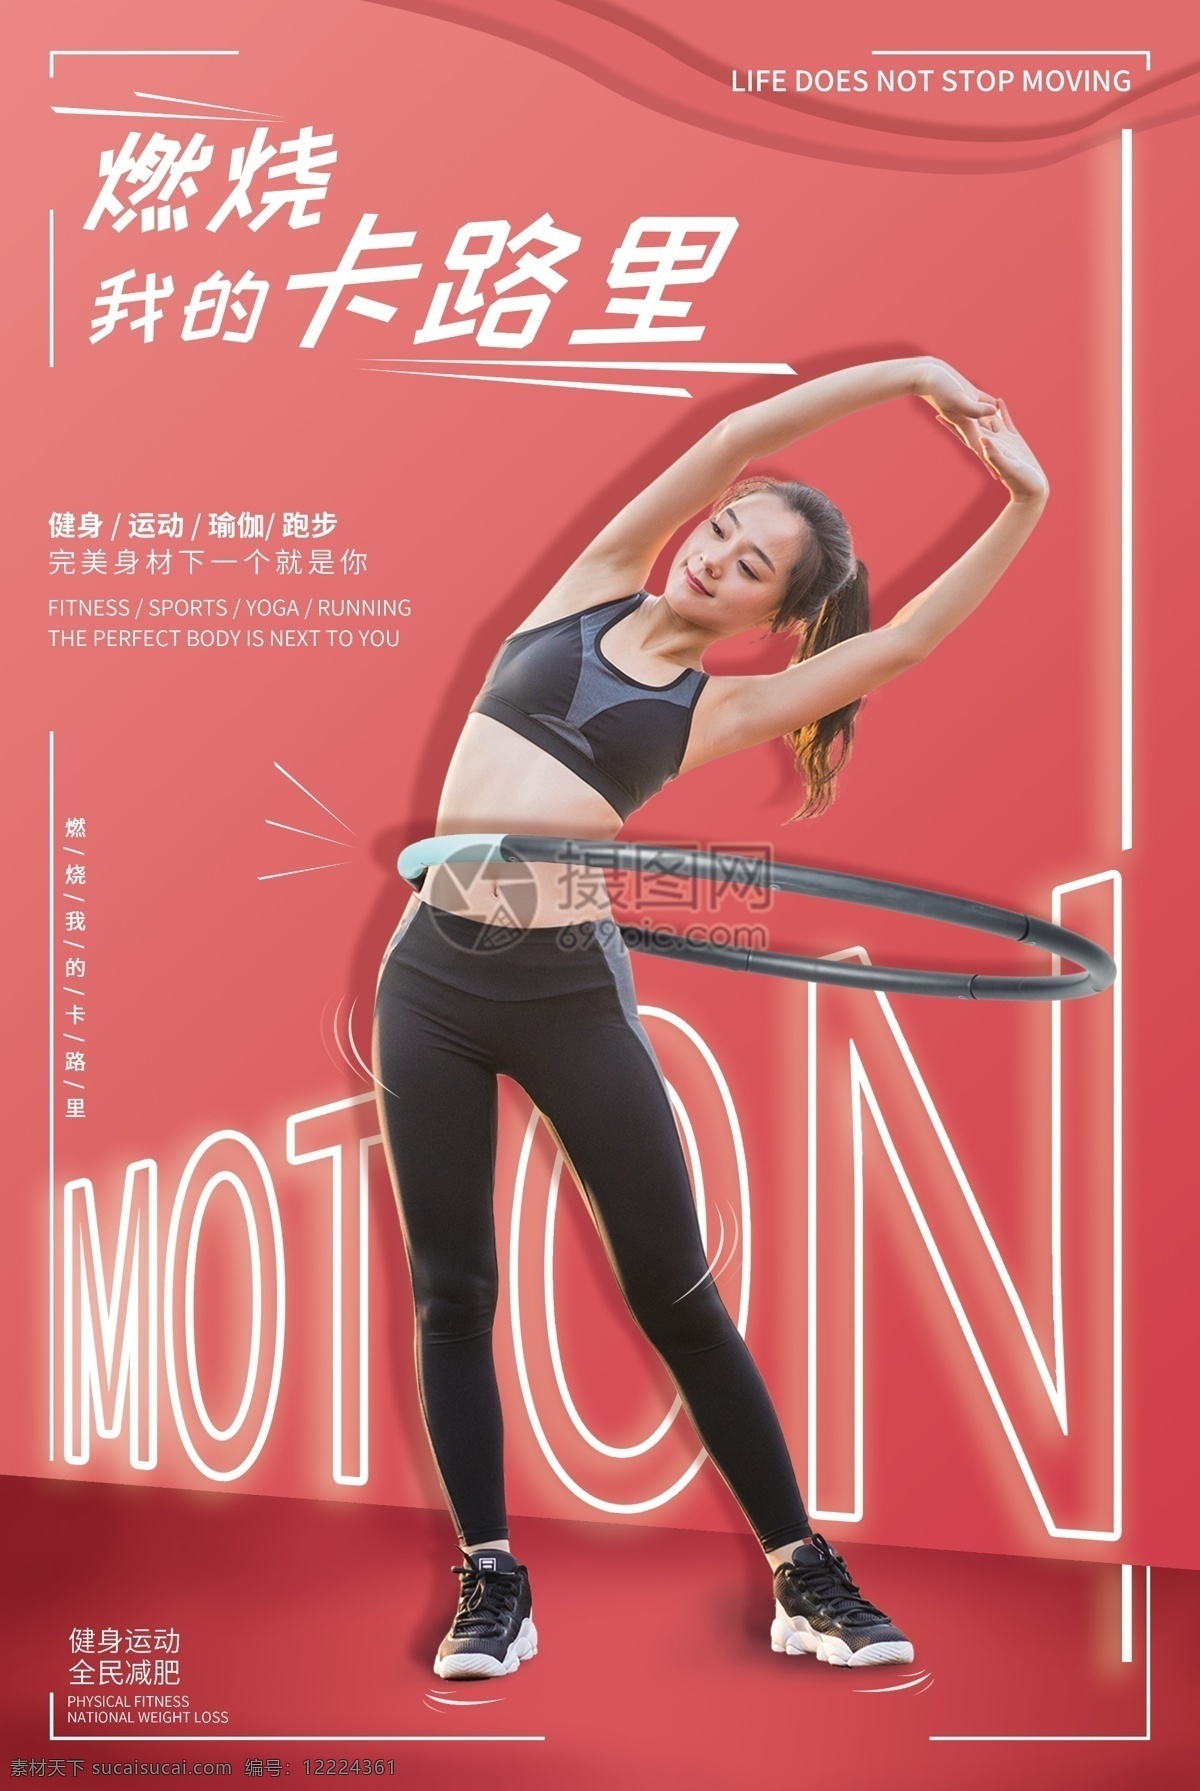 粉色 燃烧 的卡 路里 运动 健身 海报 创意 奔跑 跑步 运动健身 运动健身海报 型男健身 健身海报 健身房